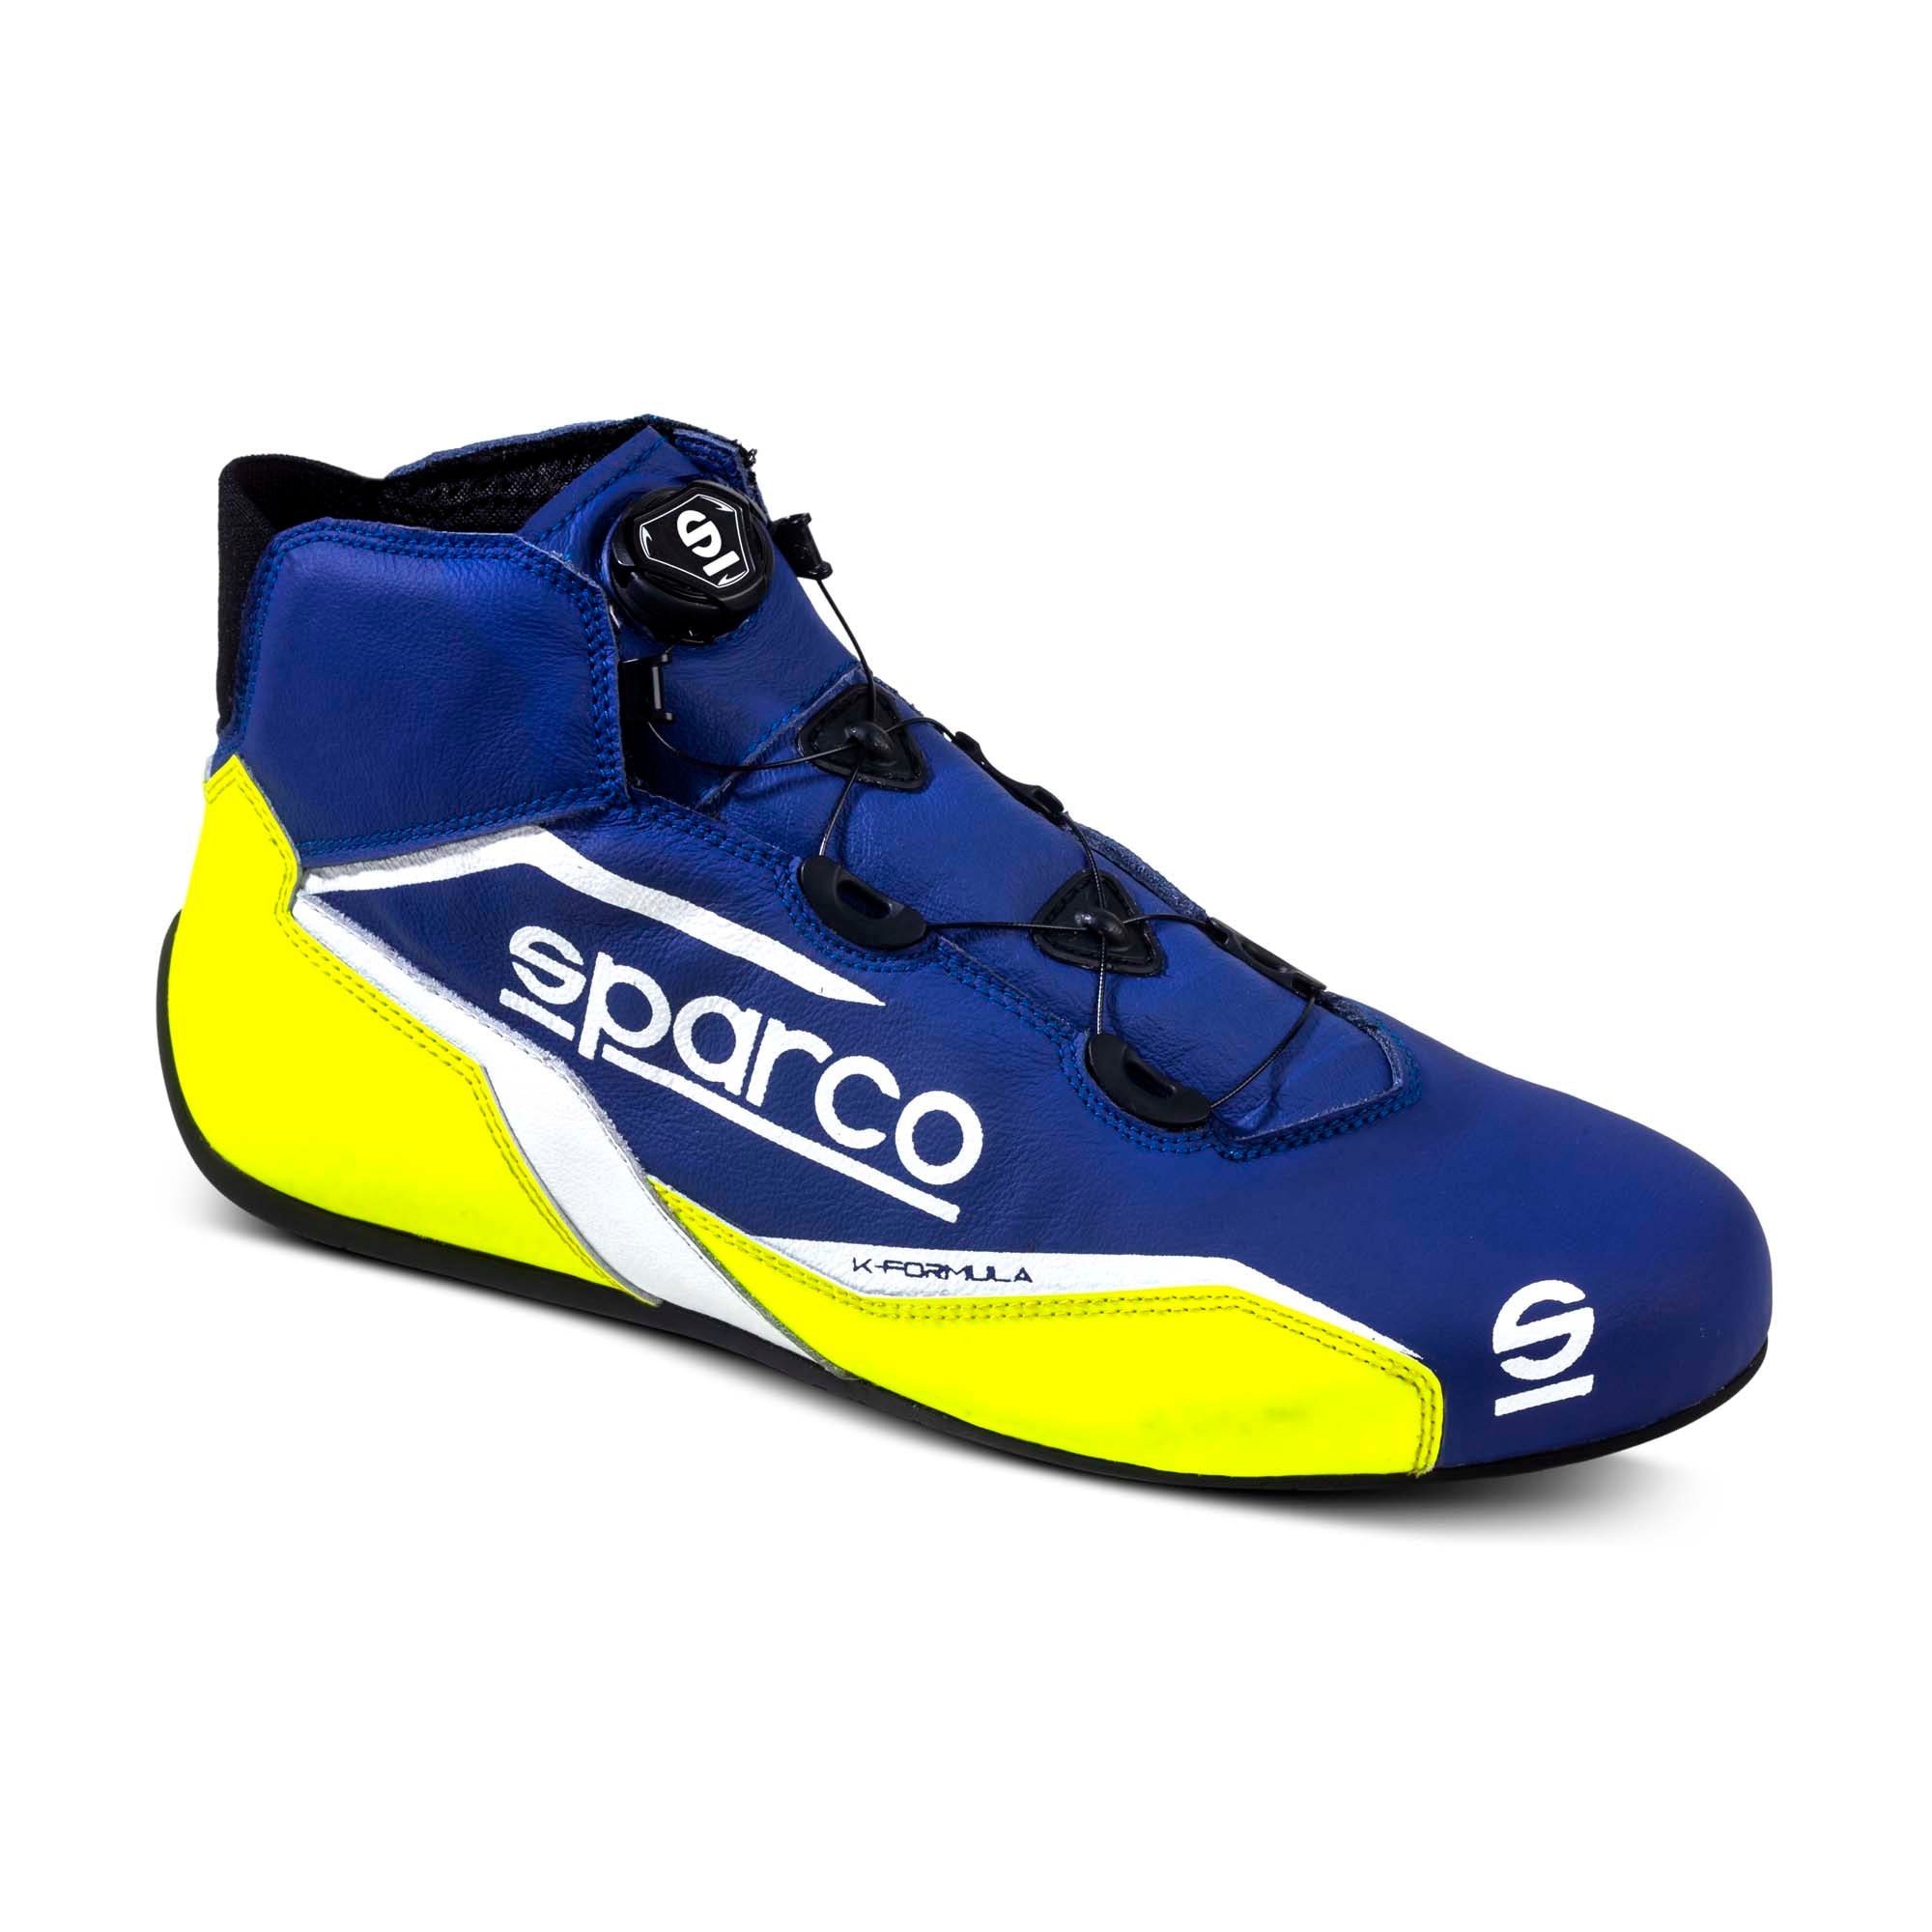 Sparco K-Formula Karting Shoes